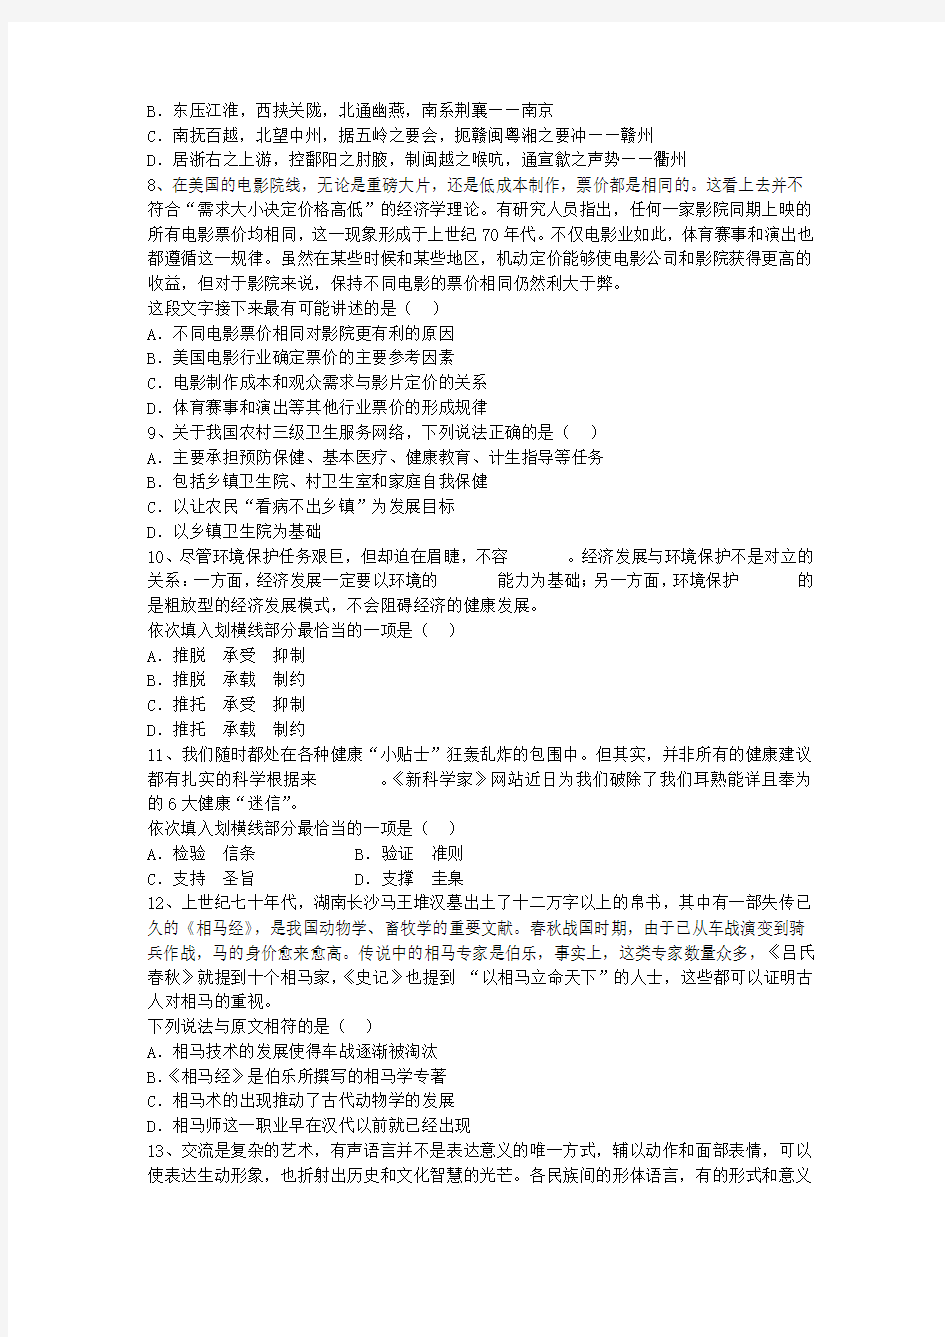 2014年广东深圳市公务员考试行测真题每日一练(8月11日)